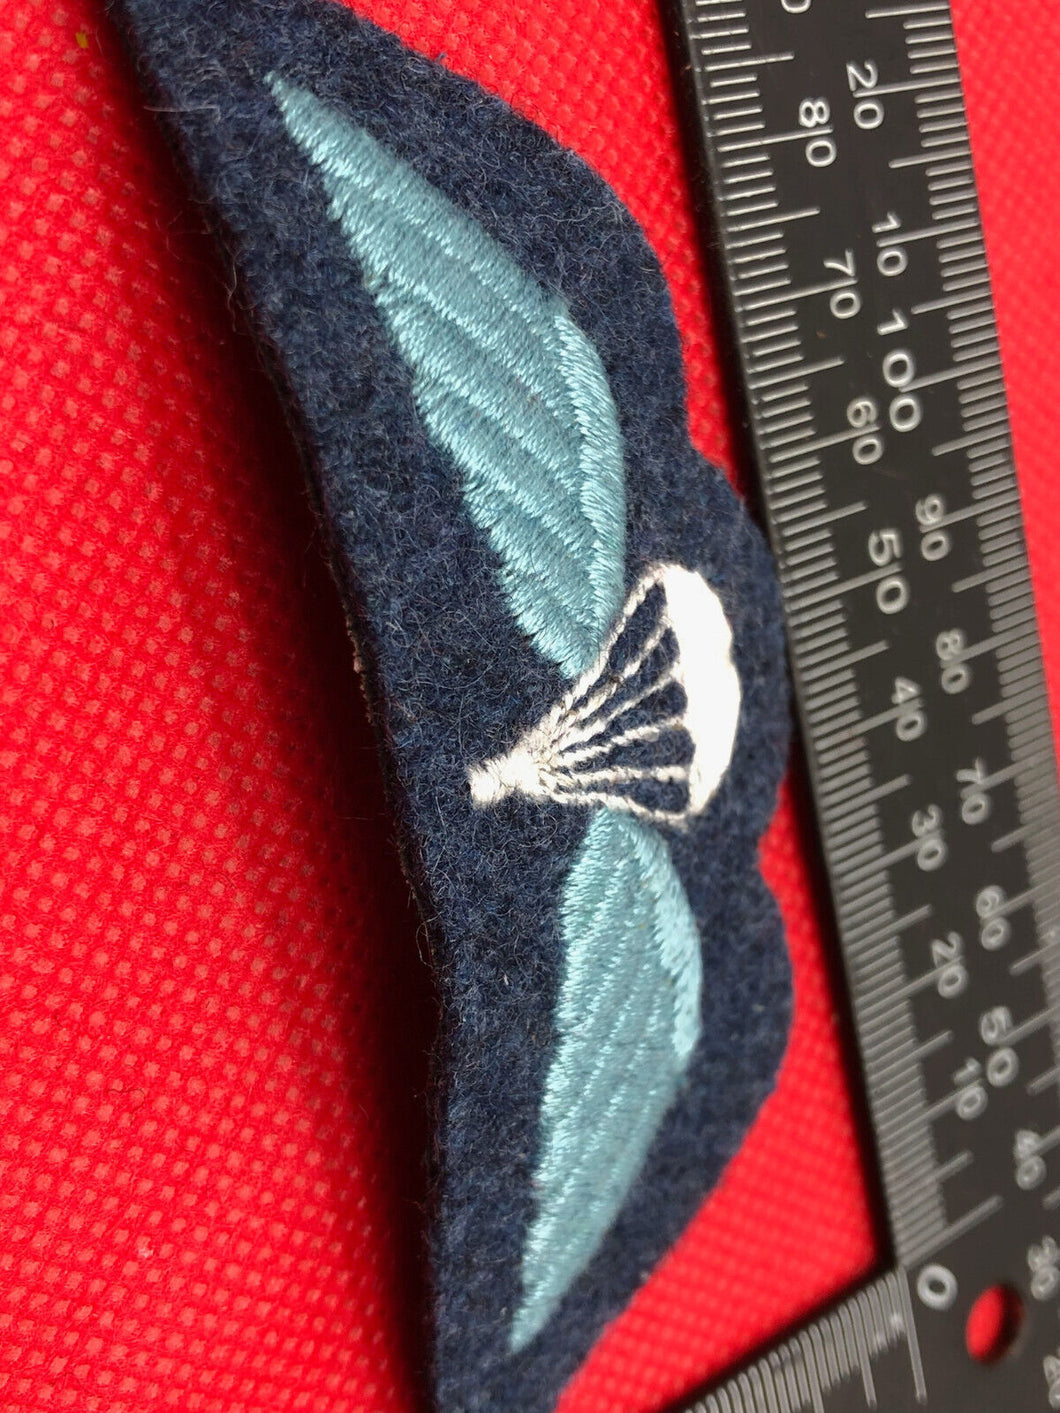 Genuine British Army Paratrooper Parachute Jump Wings - RAF Wings